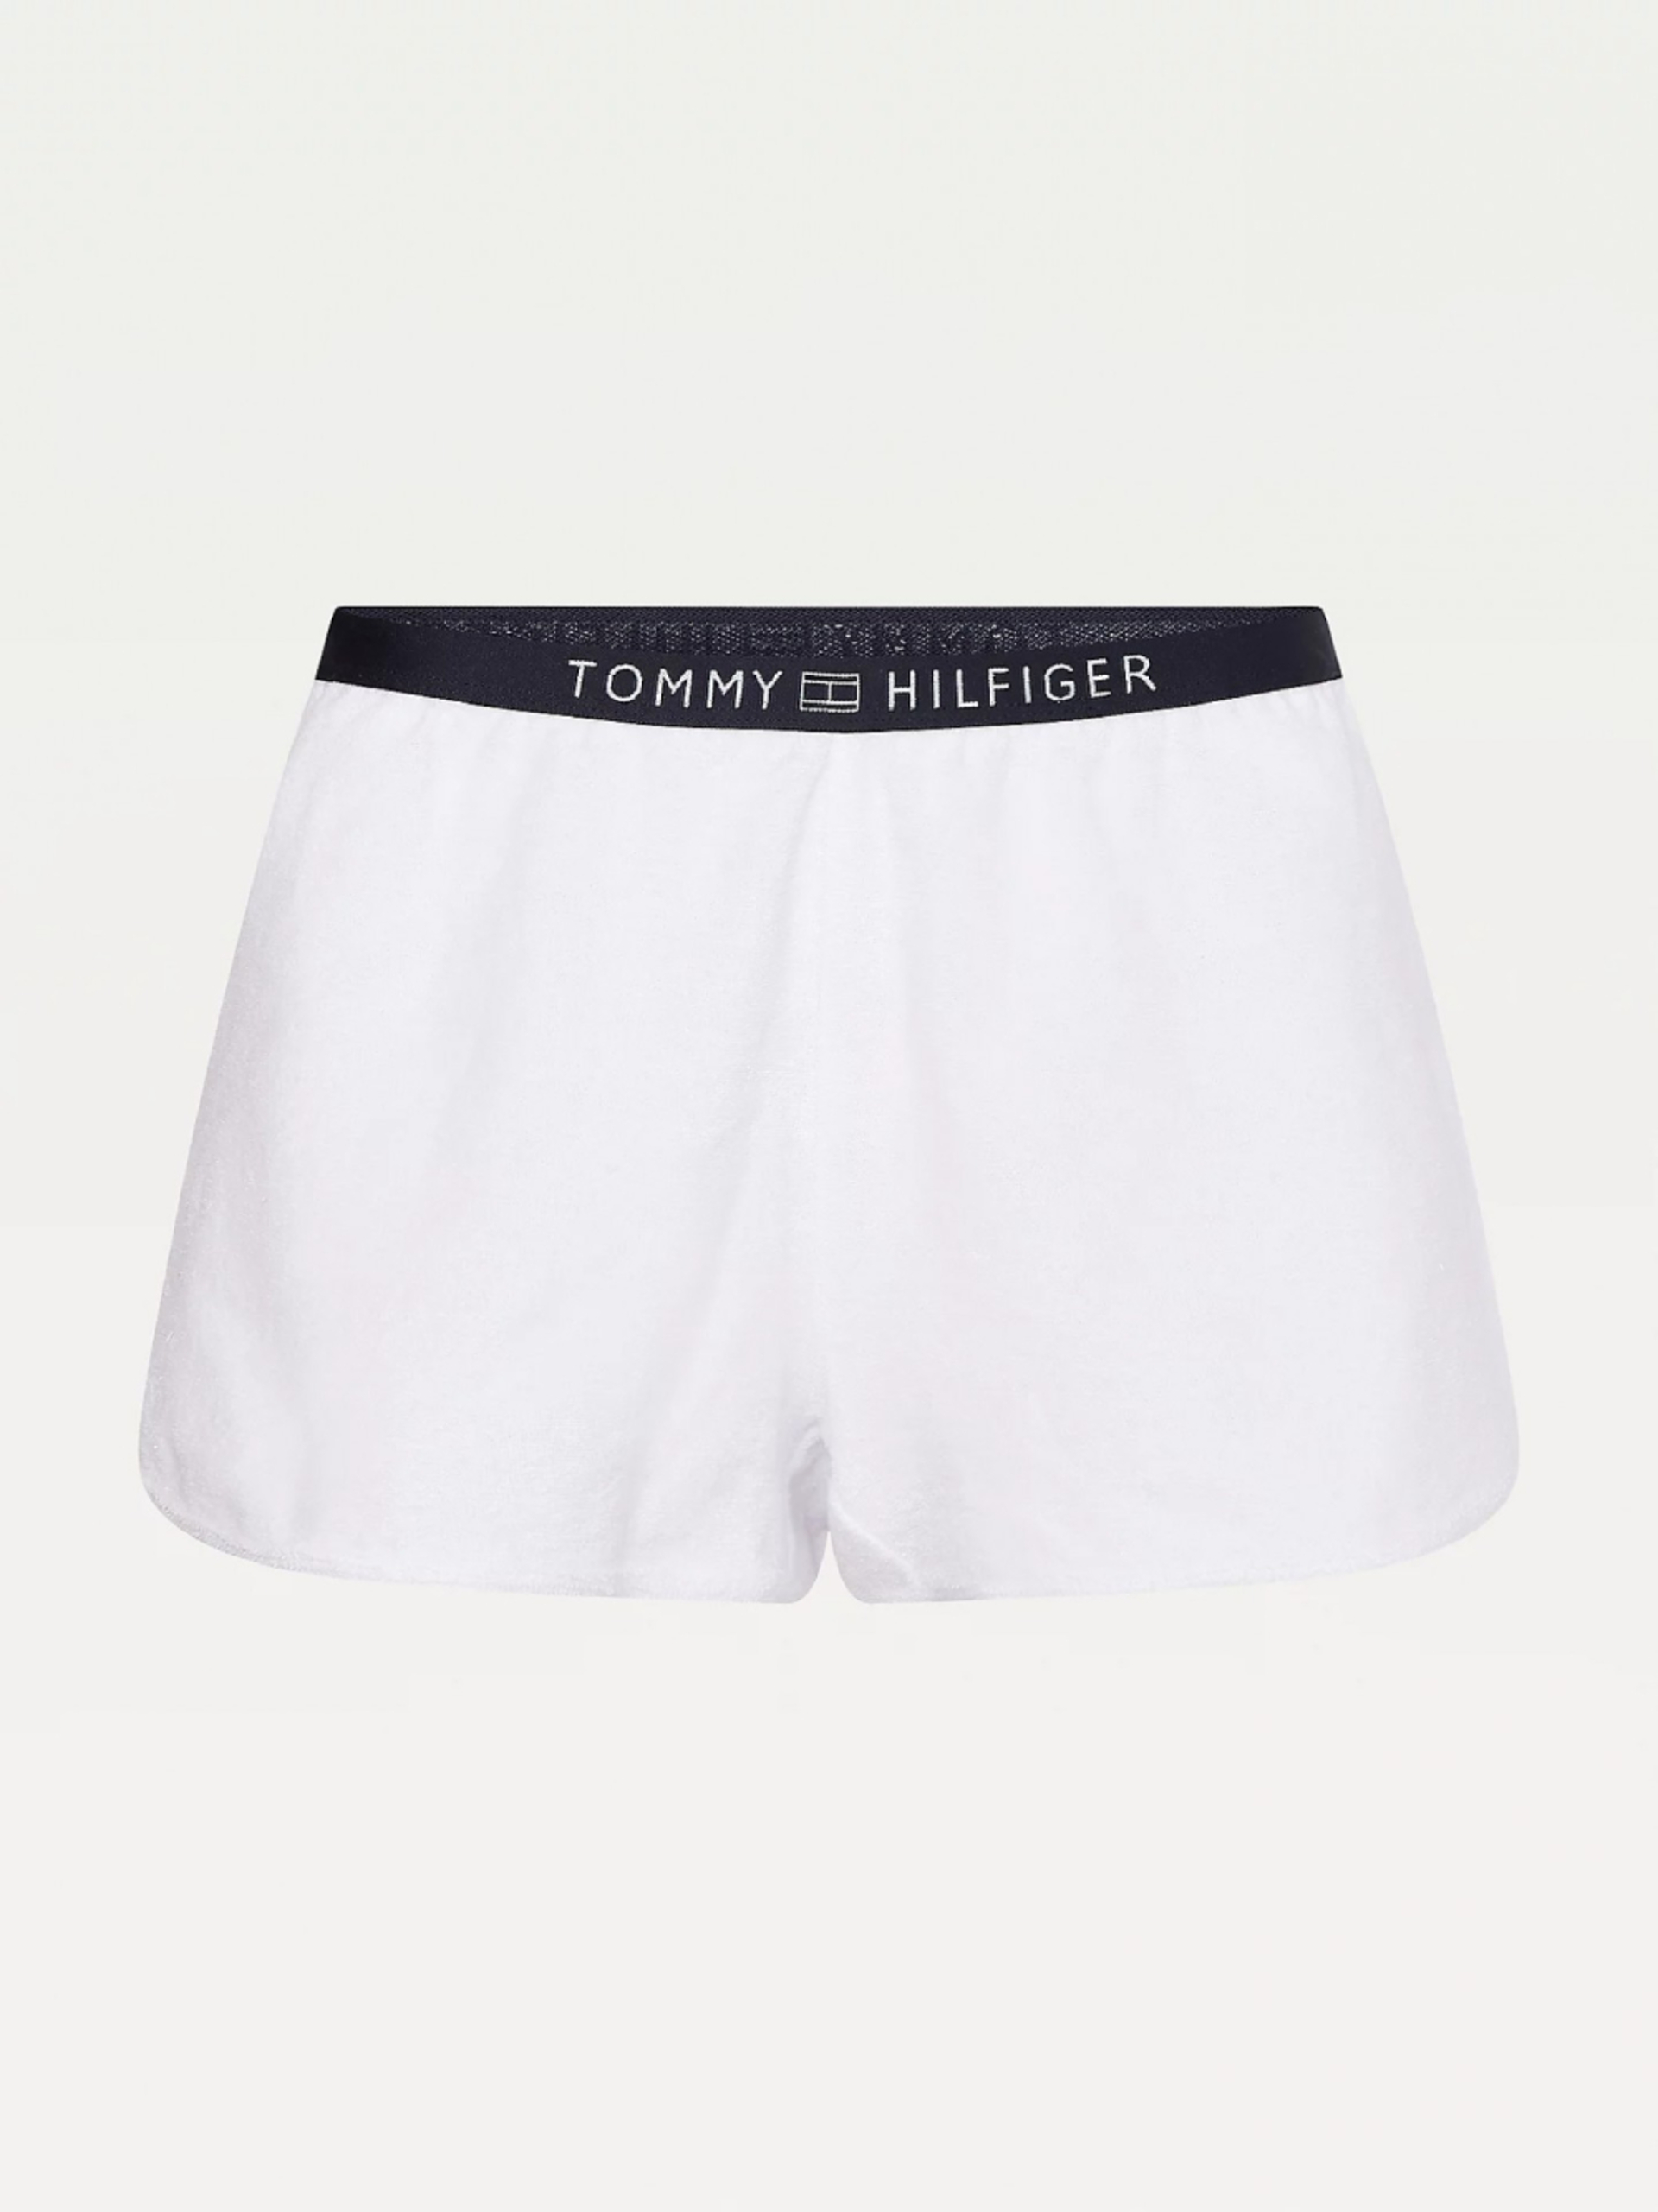 Tommy Hilfiger dámské bílé šortky - XS (YBR)